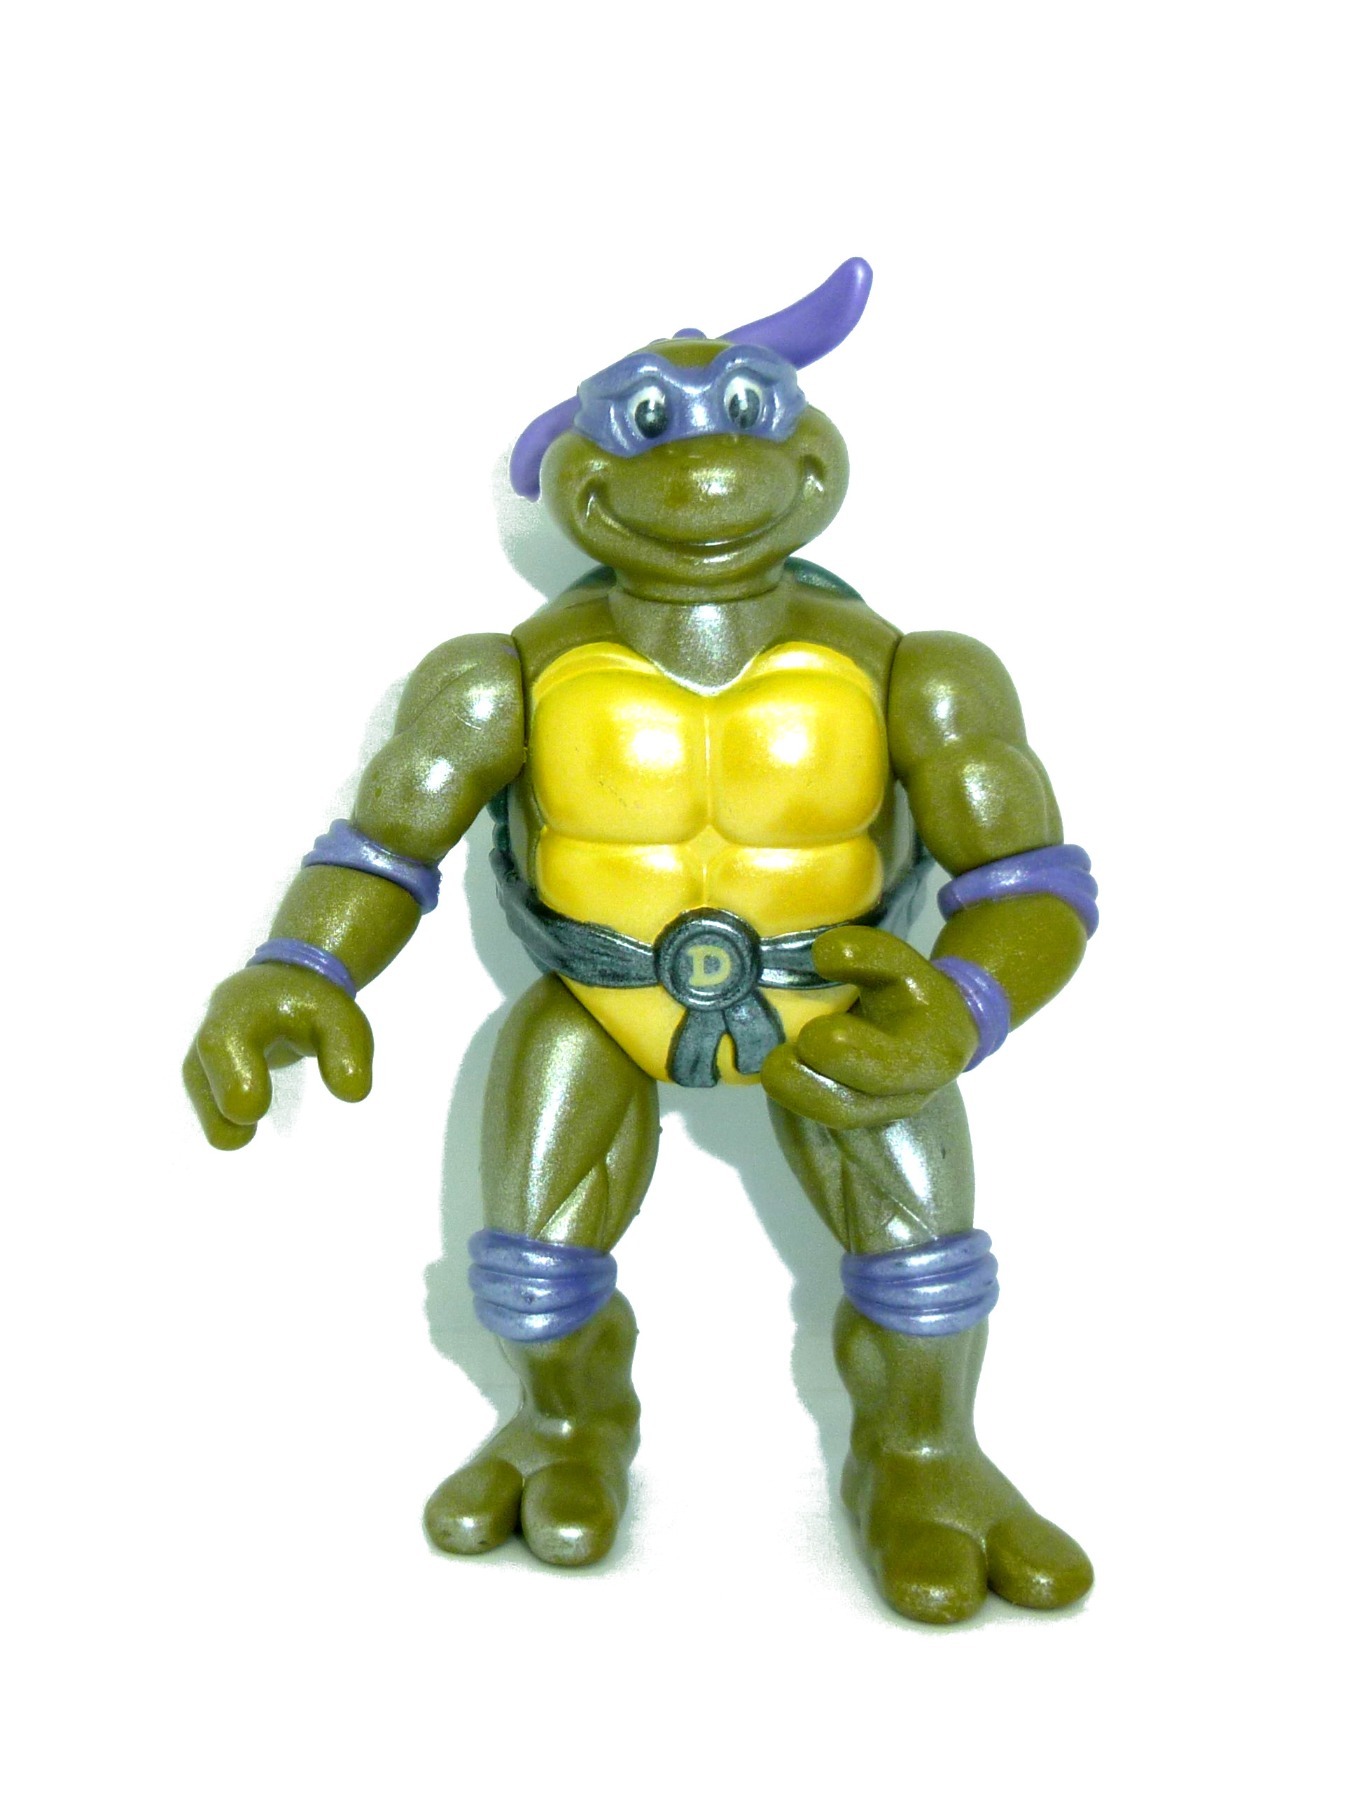 Toon Don / Donatello 1992 Mirage Studios / Playmates Toys